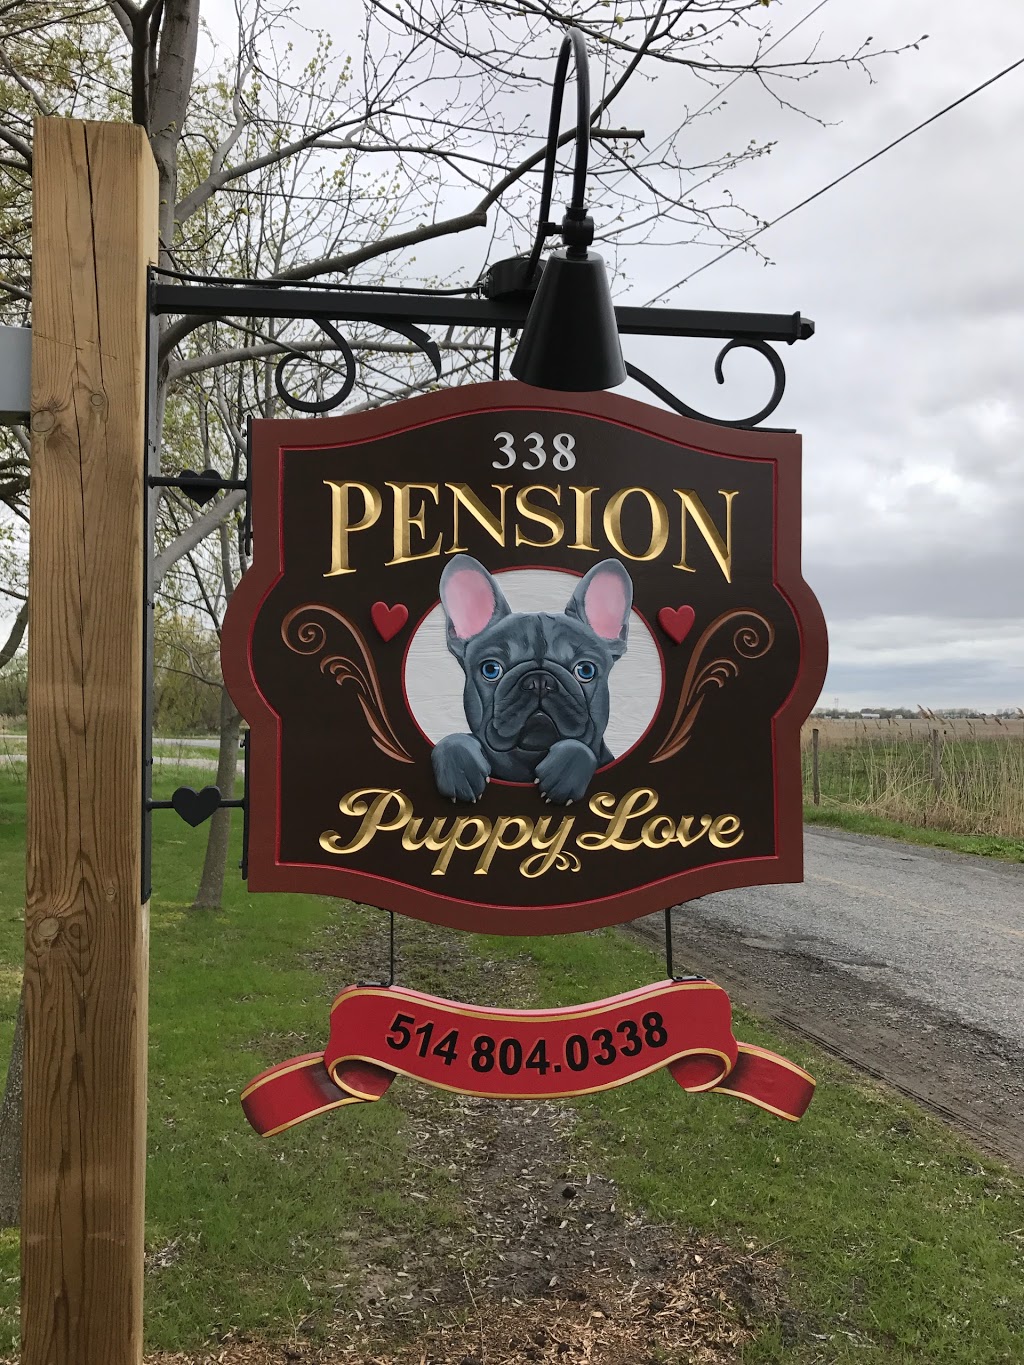 Pension Puppy Love | pet store | 338 Chemin Saint-Édouard, Saint-Mathieu, QC J0L 2H0, Canada | 5148040338 OR +1 514-804-0338